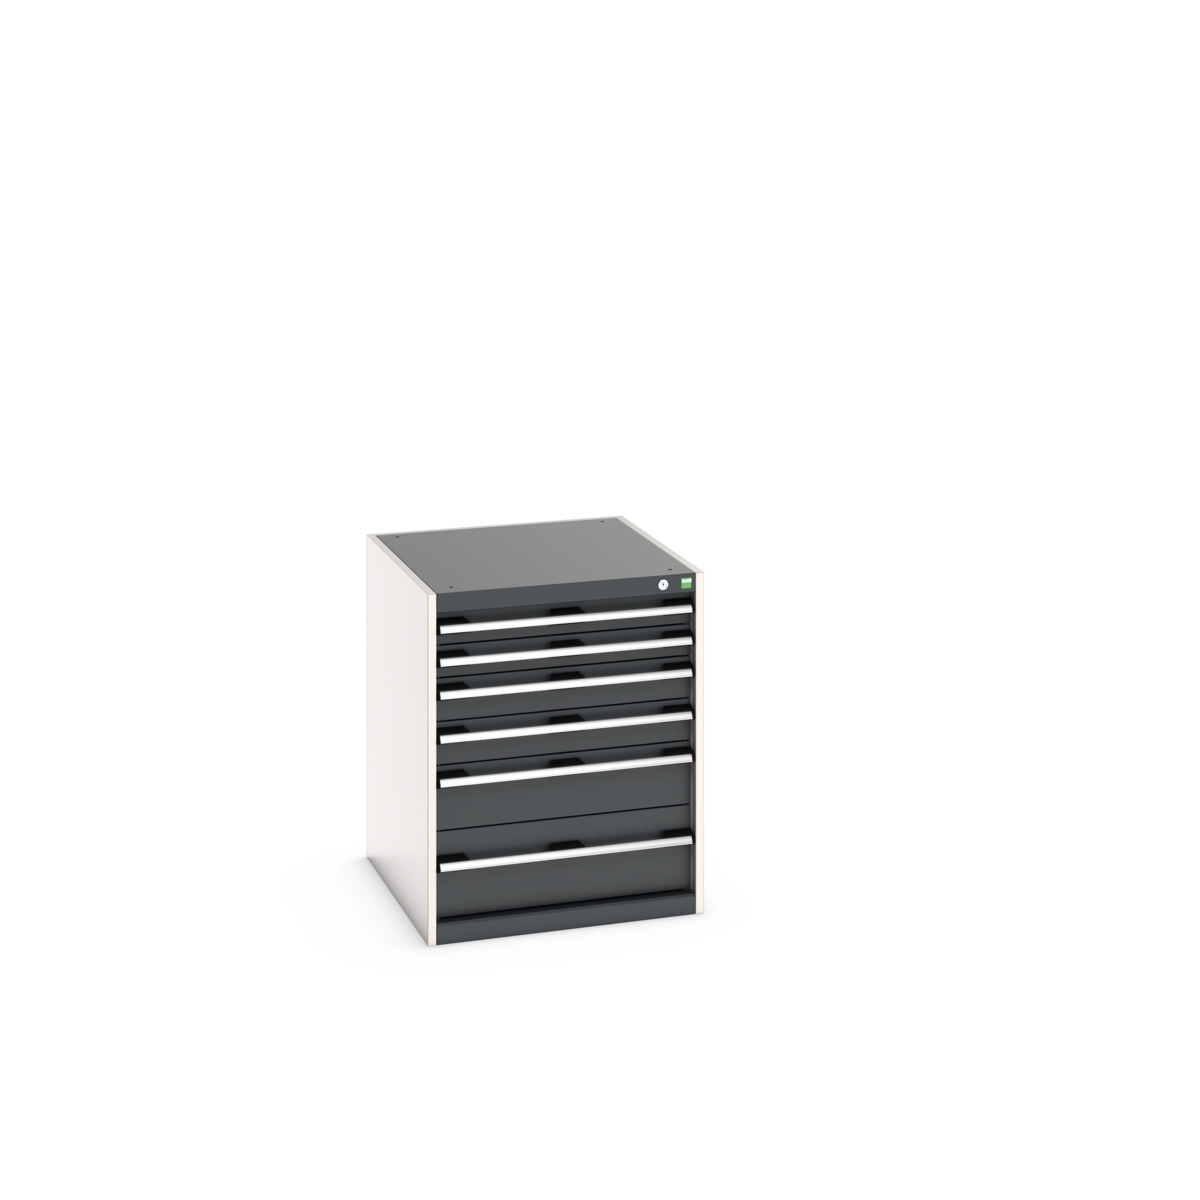 40027019.19V - cubio drawer cabinet